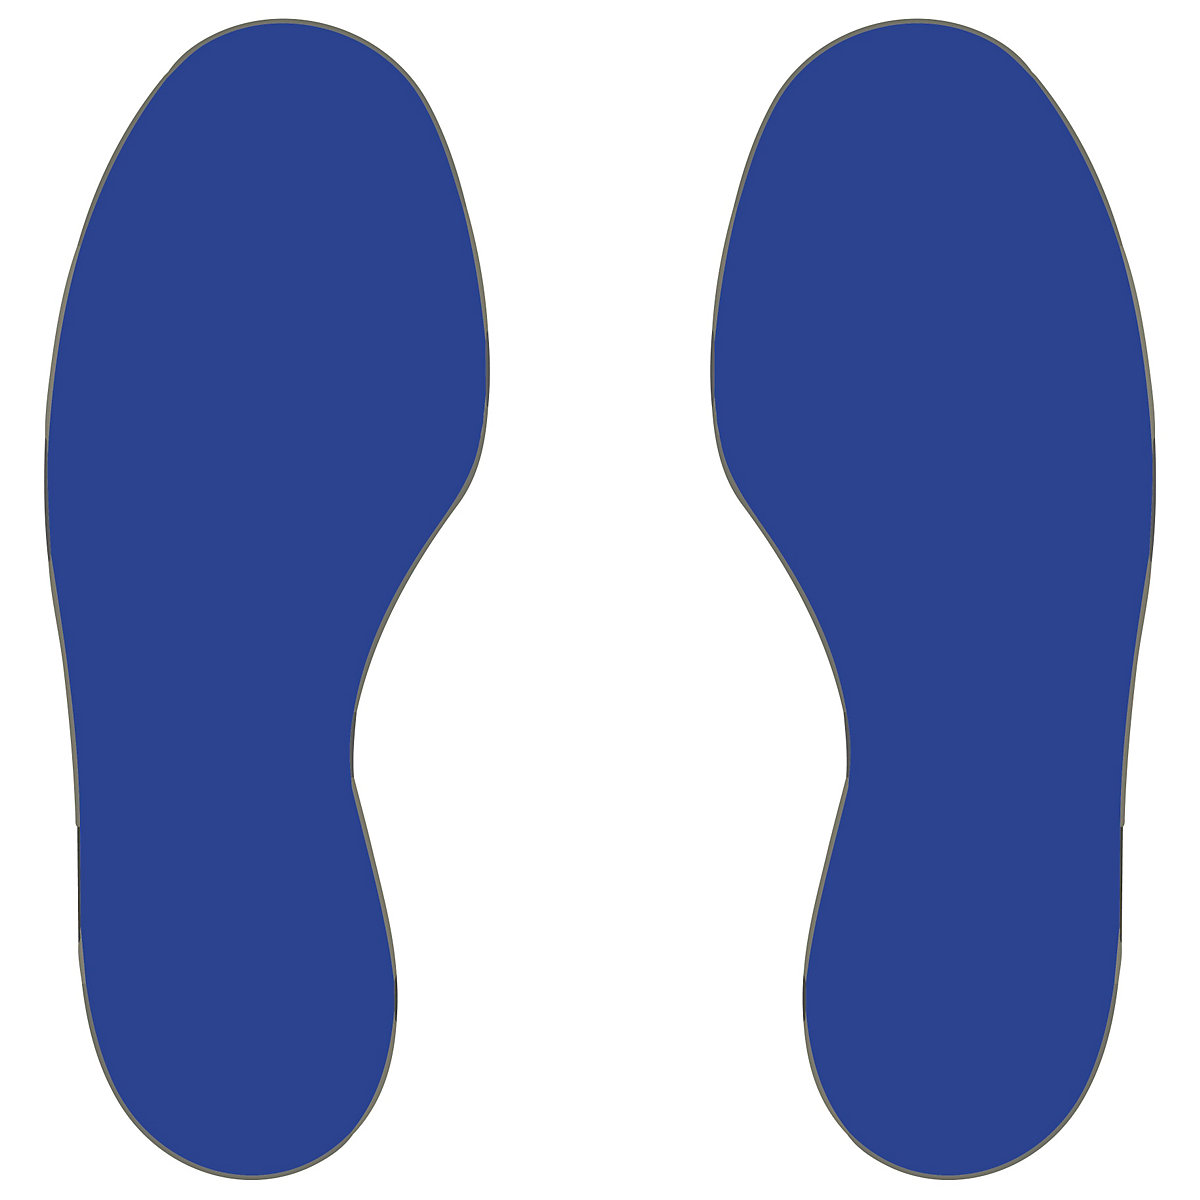 Marcature da pavimento in PVC, piedi, 5 destra / 5 sinistra, conf. 10 pz., blu-3